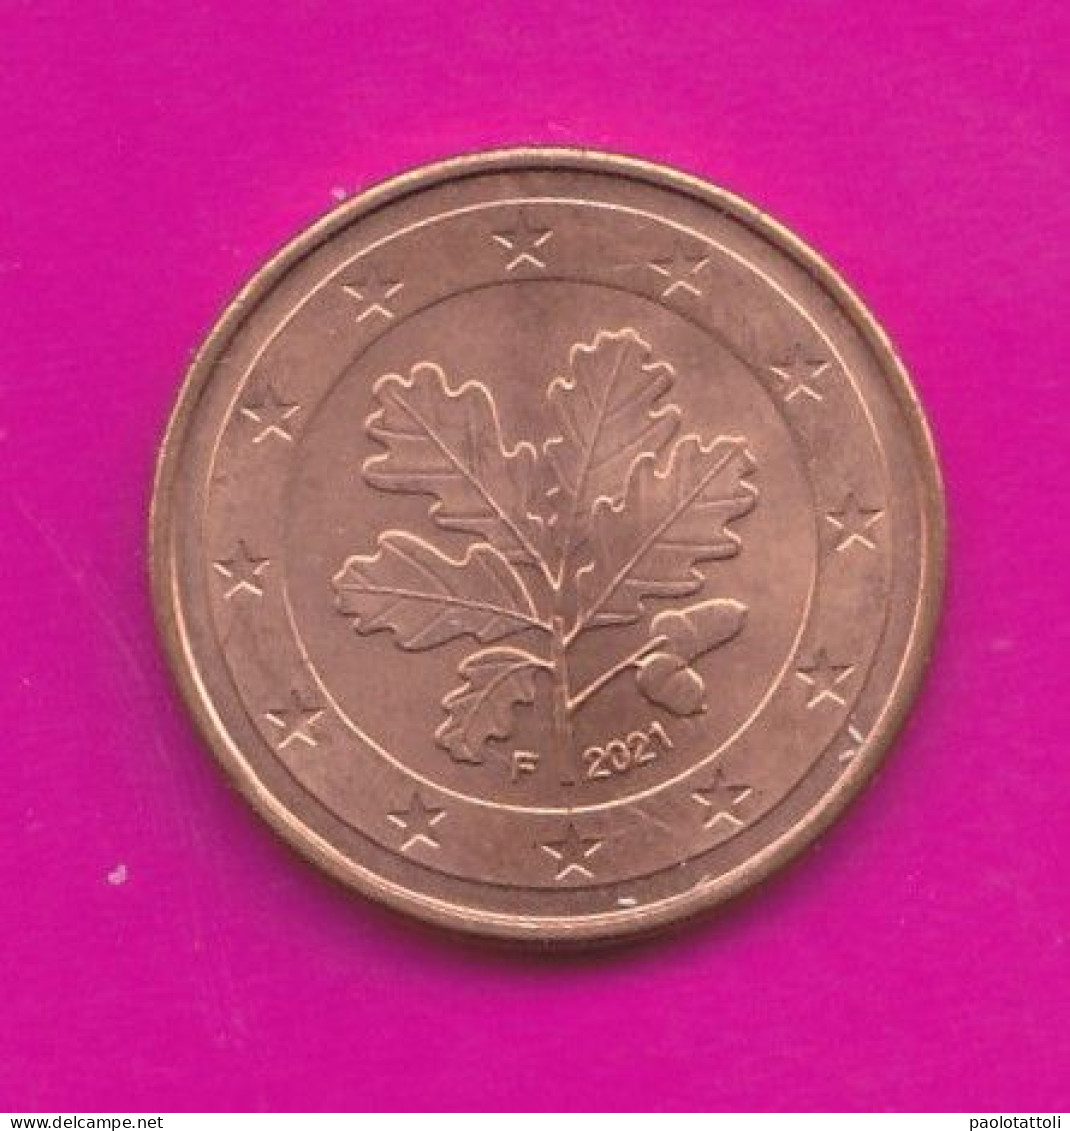 Germany, F 2021- 5 Euro Cent- Nickel Brass- Obverse Oak Leaf. Reverse Denomination- SPL, EF, SUP, VZ- - Allemagne